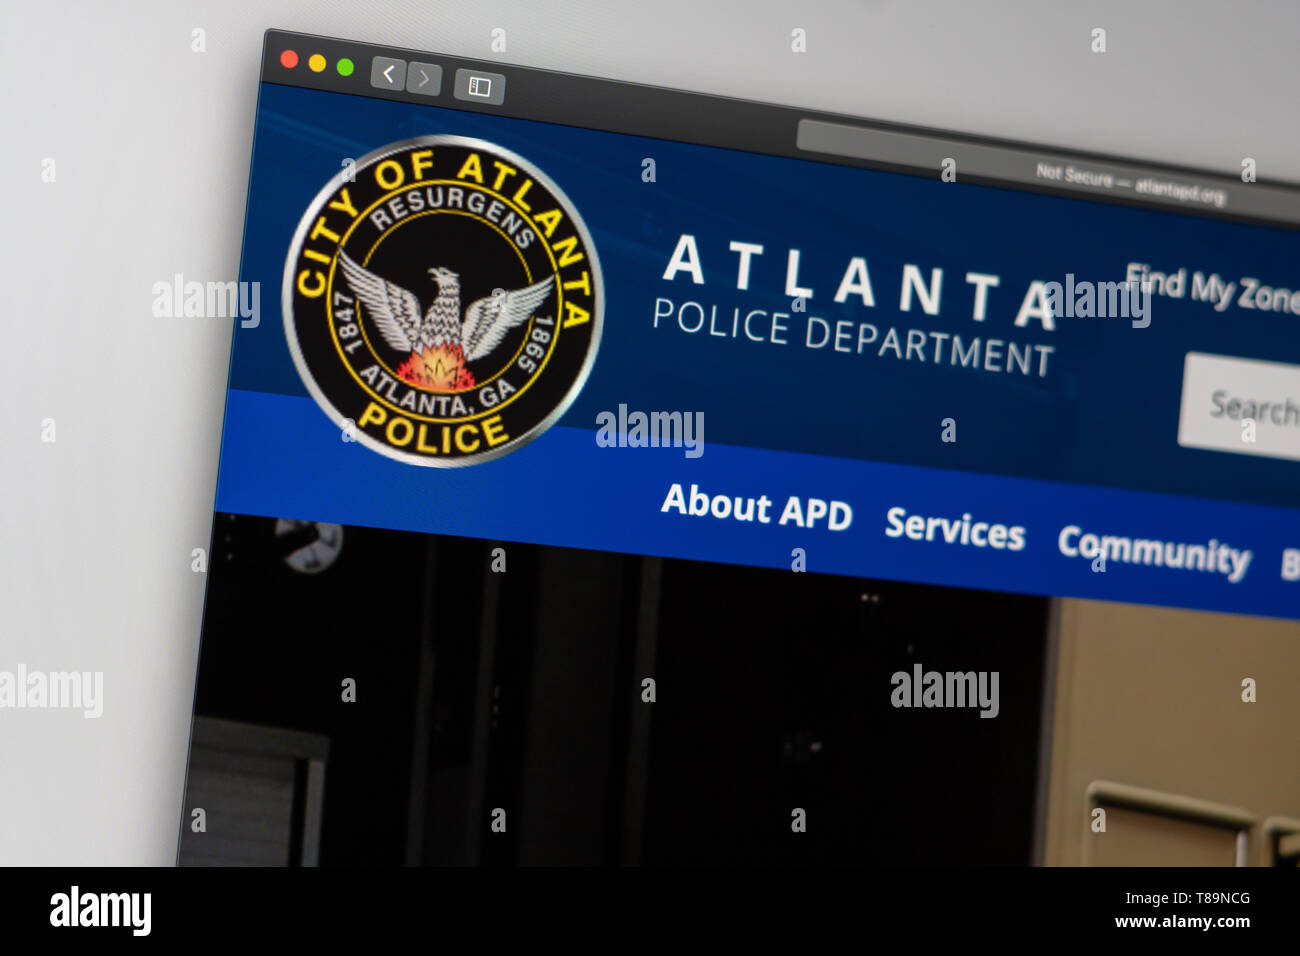 Miami/USA, 05.11.2019: Atlanta Police Department Website Homepage. Nahaufnahme des APD Logo. Kann als illustrative für Nachrichten Medien oder anderen websit verwendet werden. Stockfoto